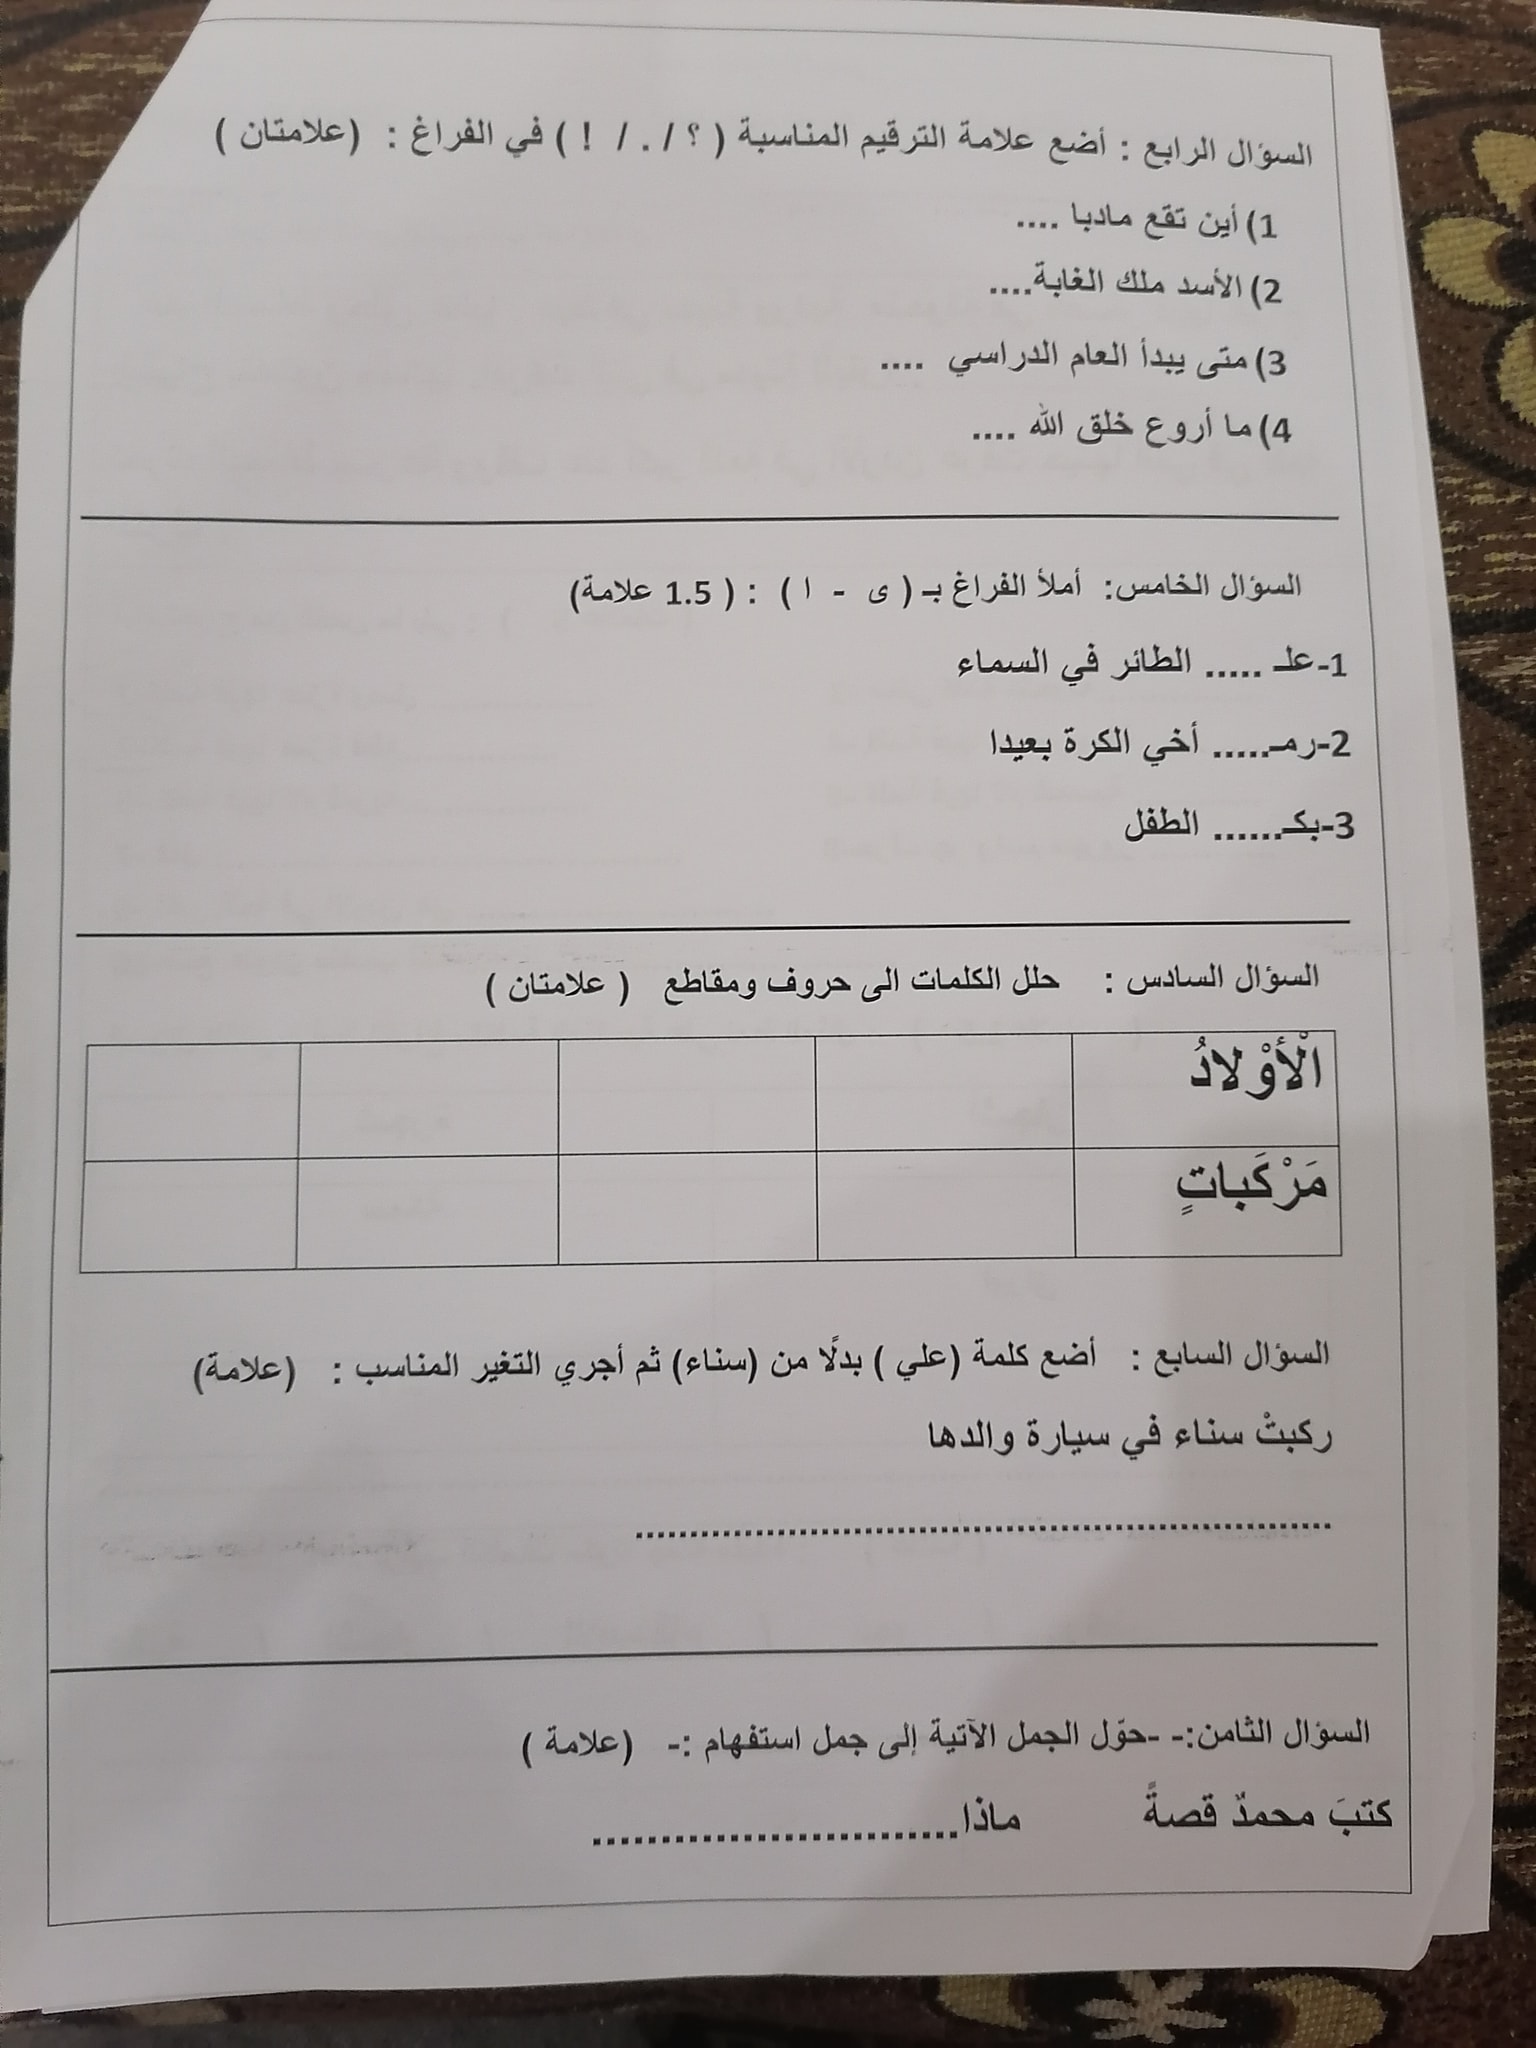 2 صور امتحان نهائي لمادة اللغة العربية للصف الثالث الفصل الاول 2021.jpg